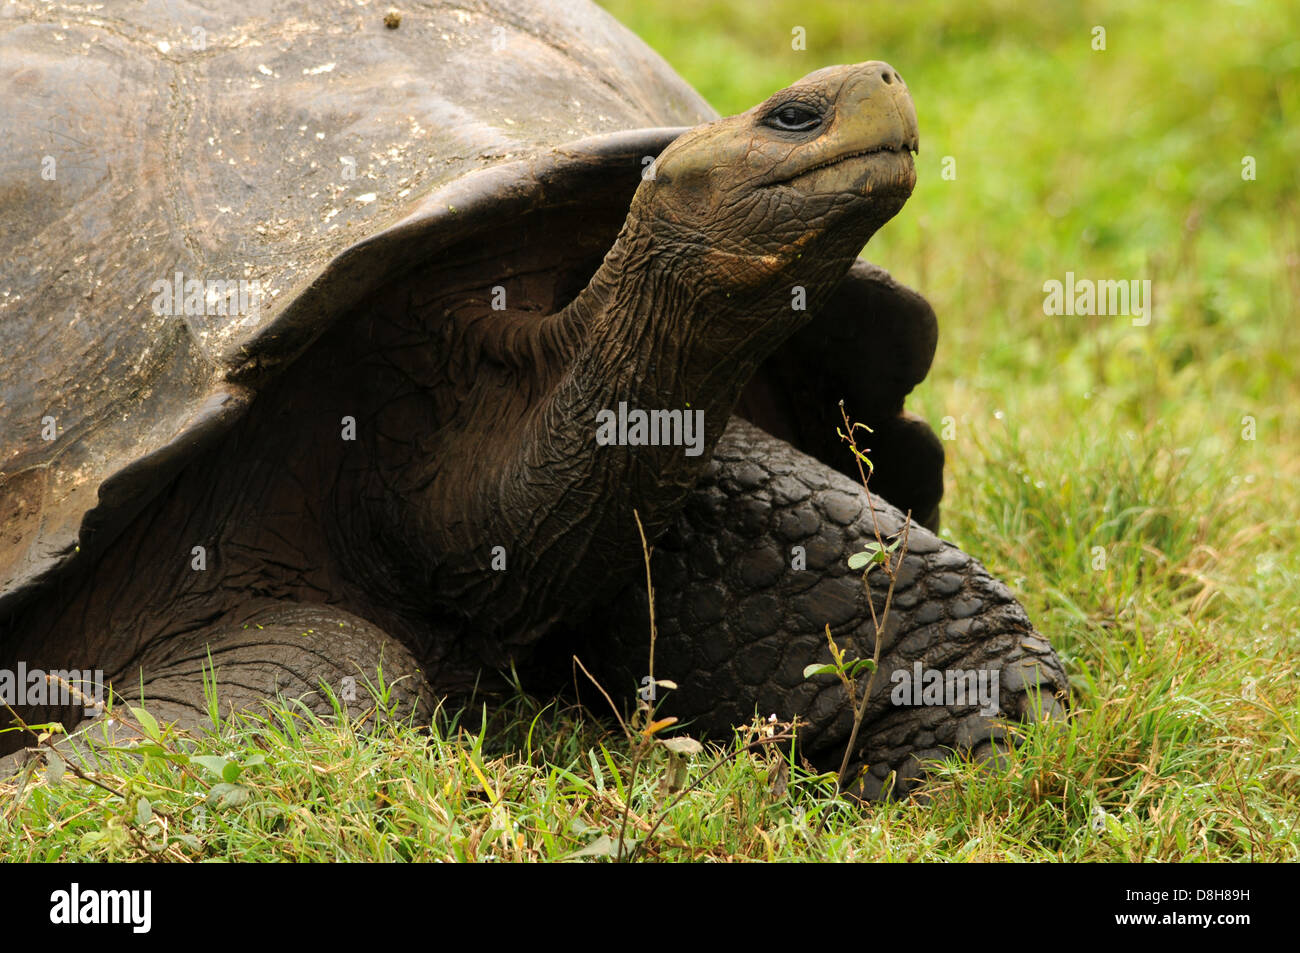 Galapagos giant tortoise Stock Photo